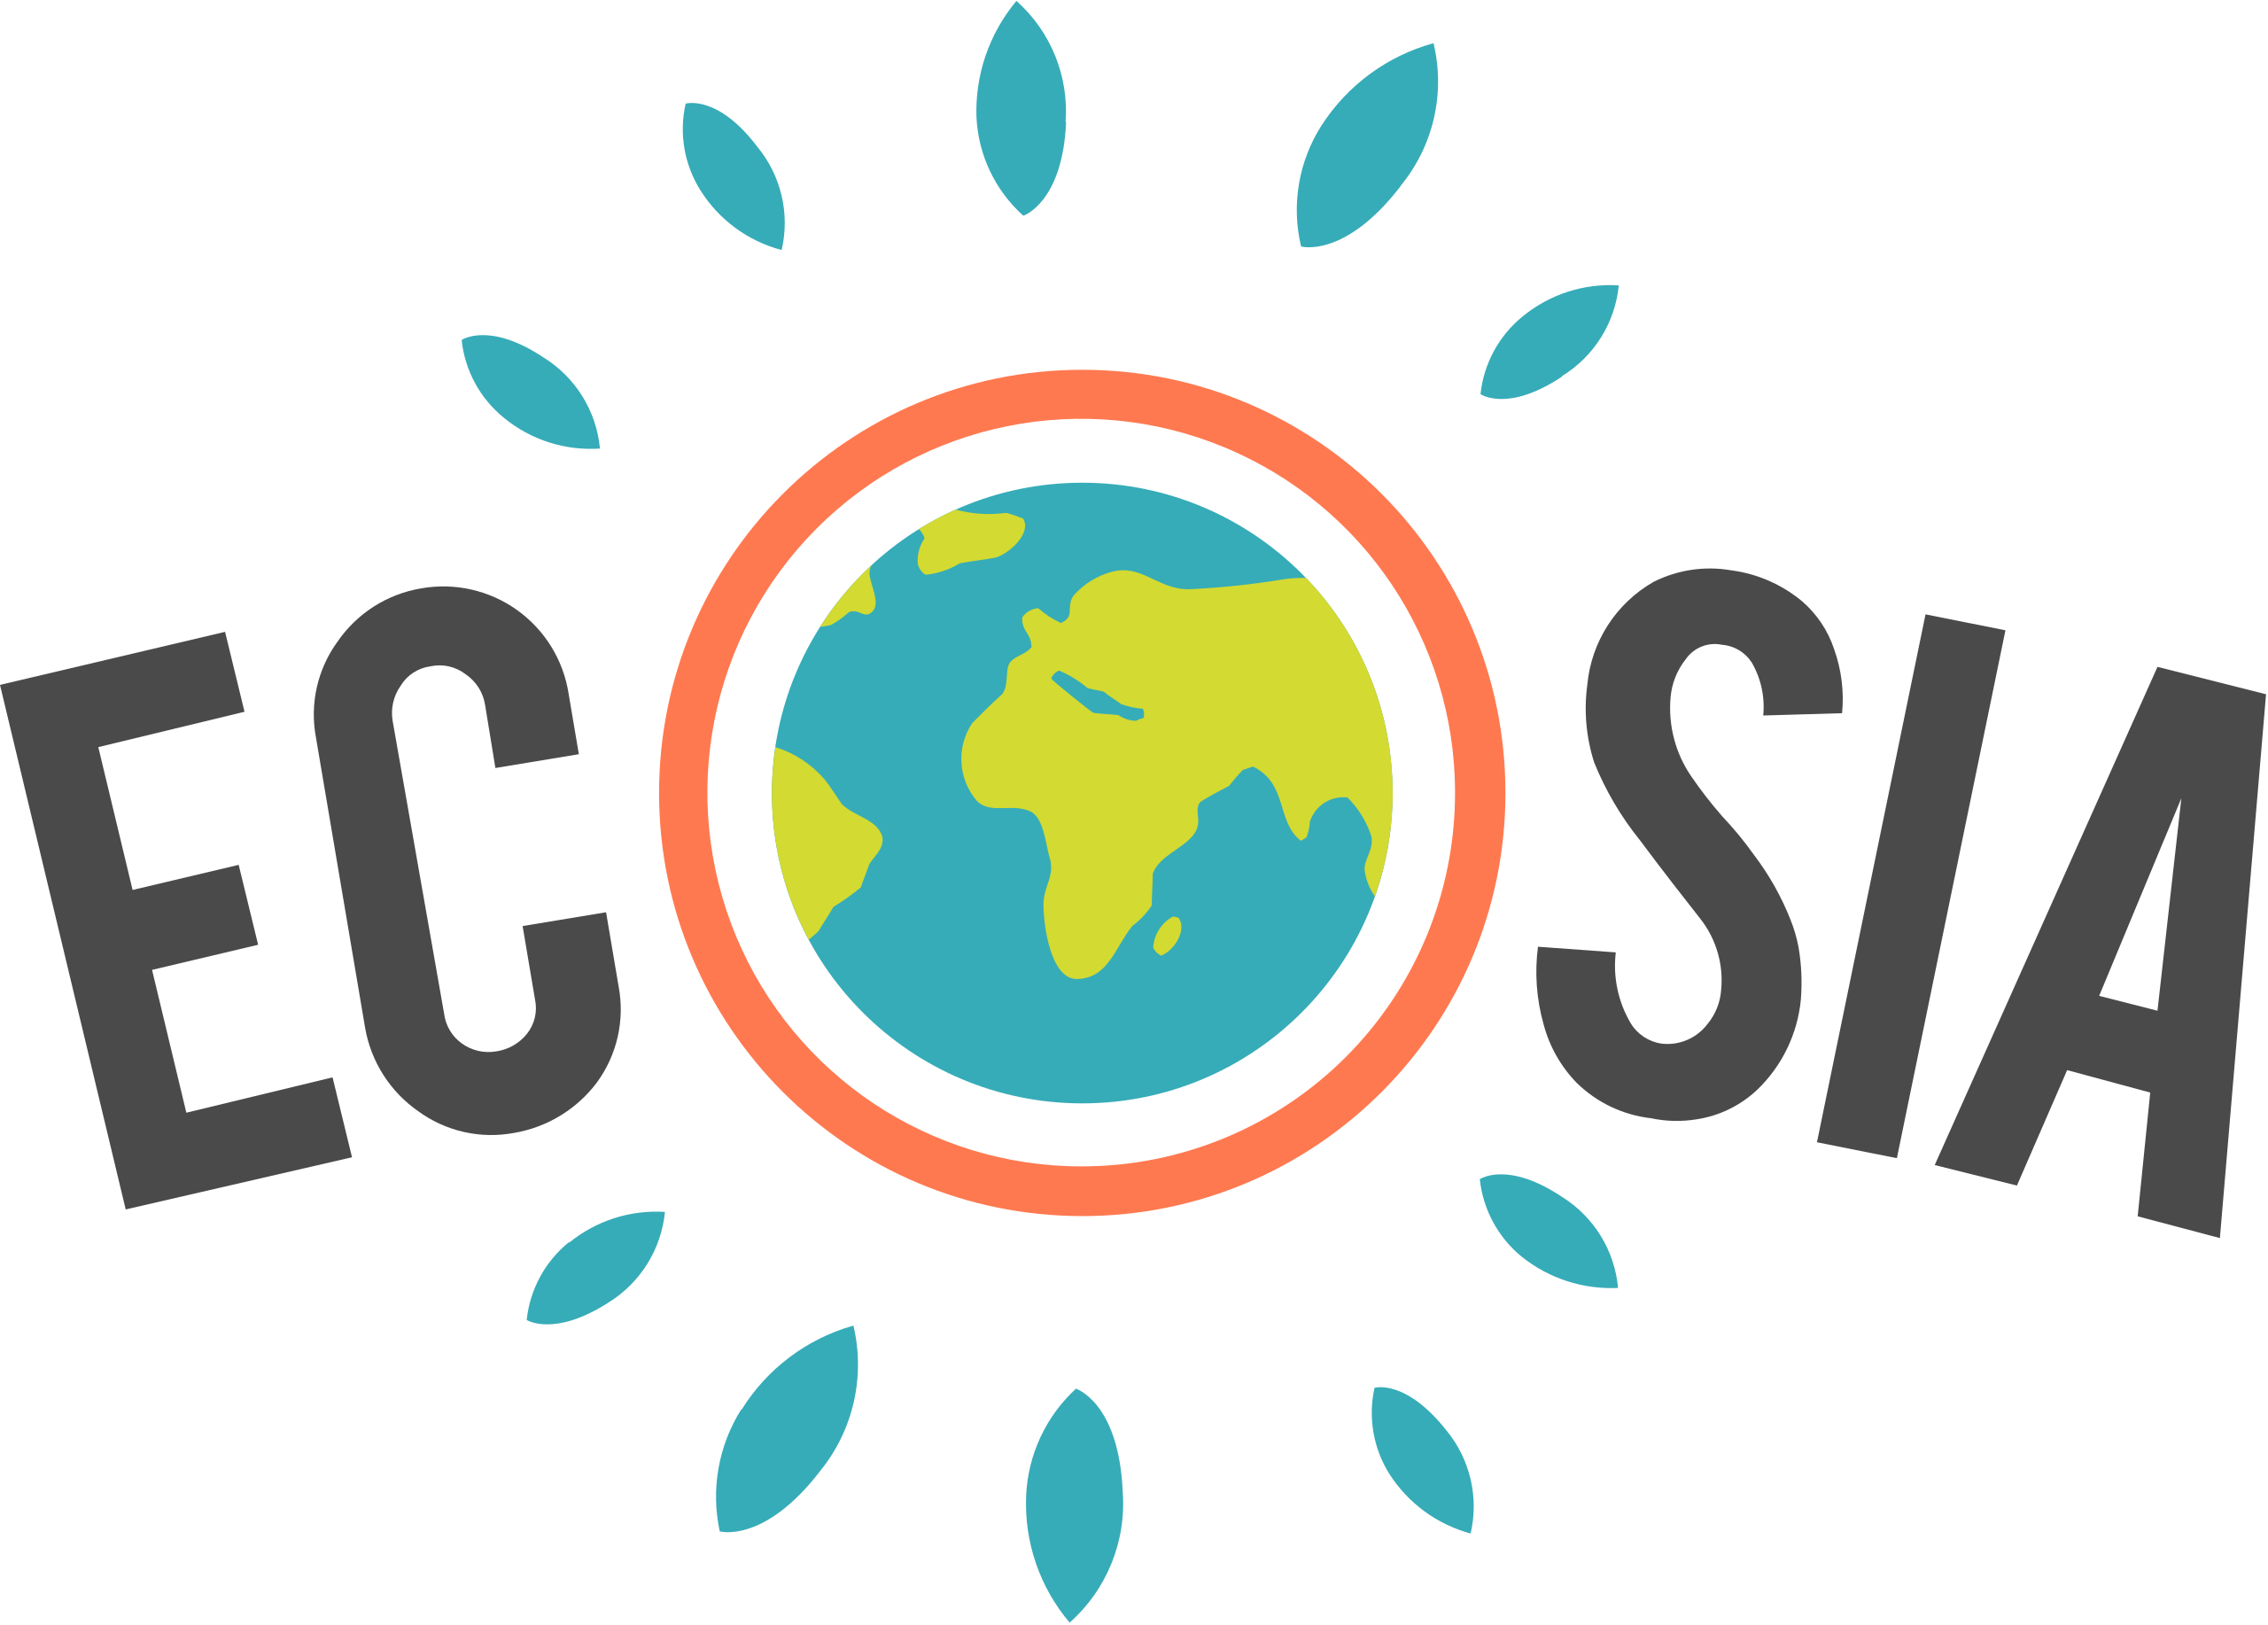 Ecosia c'est quoi?